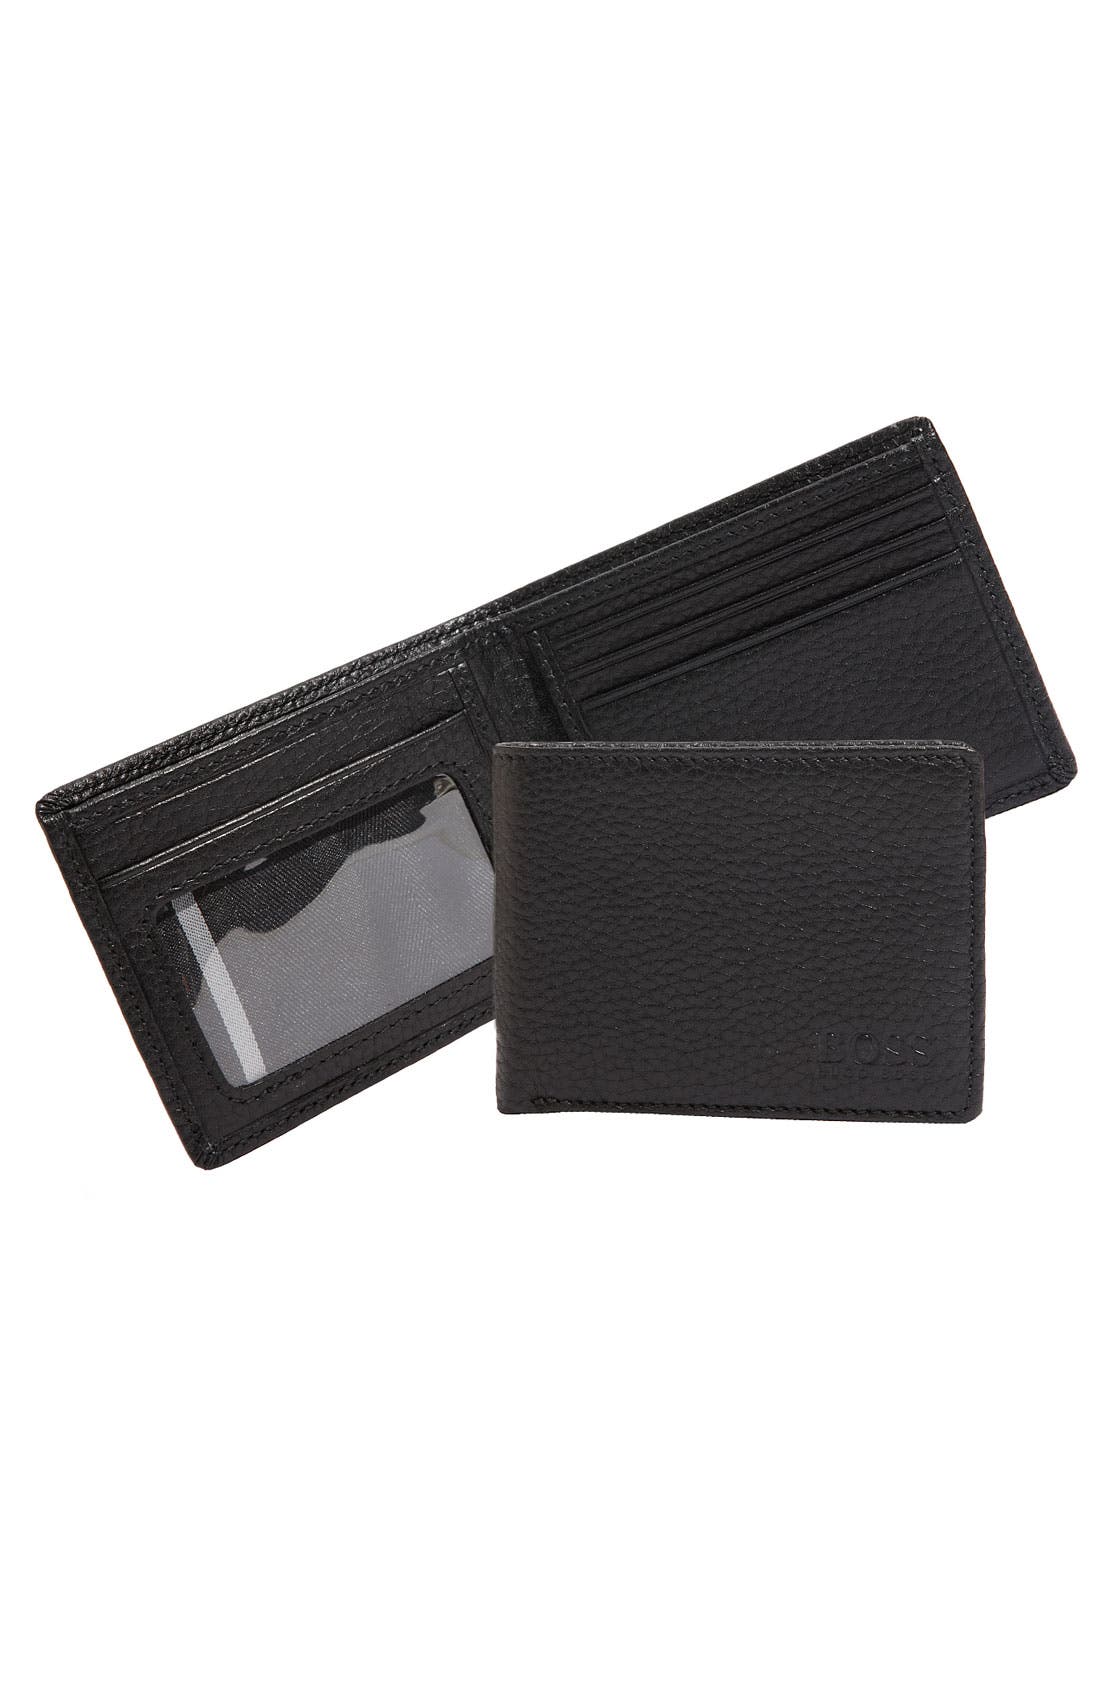 burberry men's wallet with id window